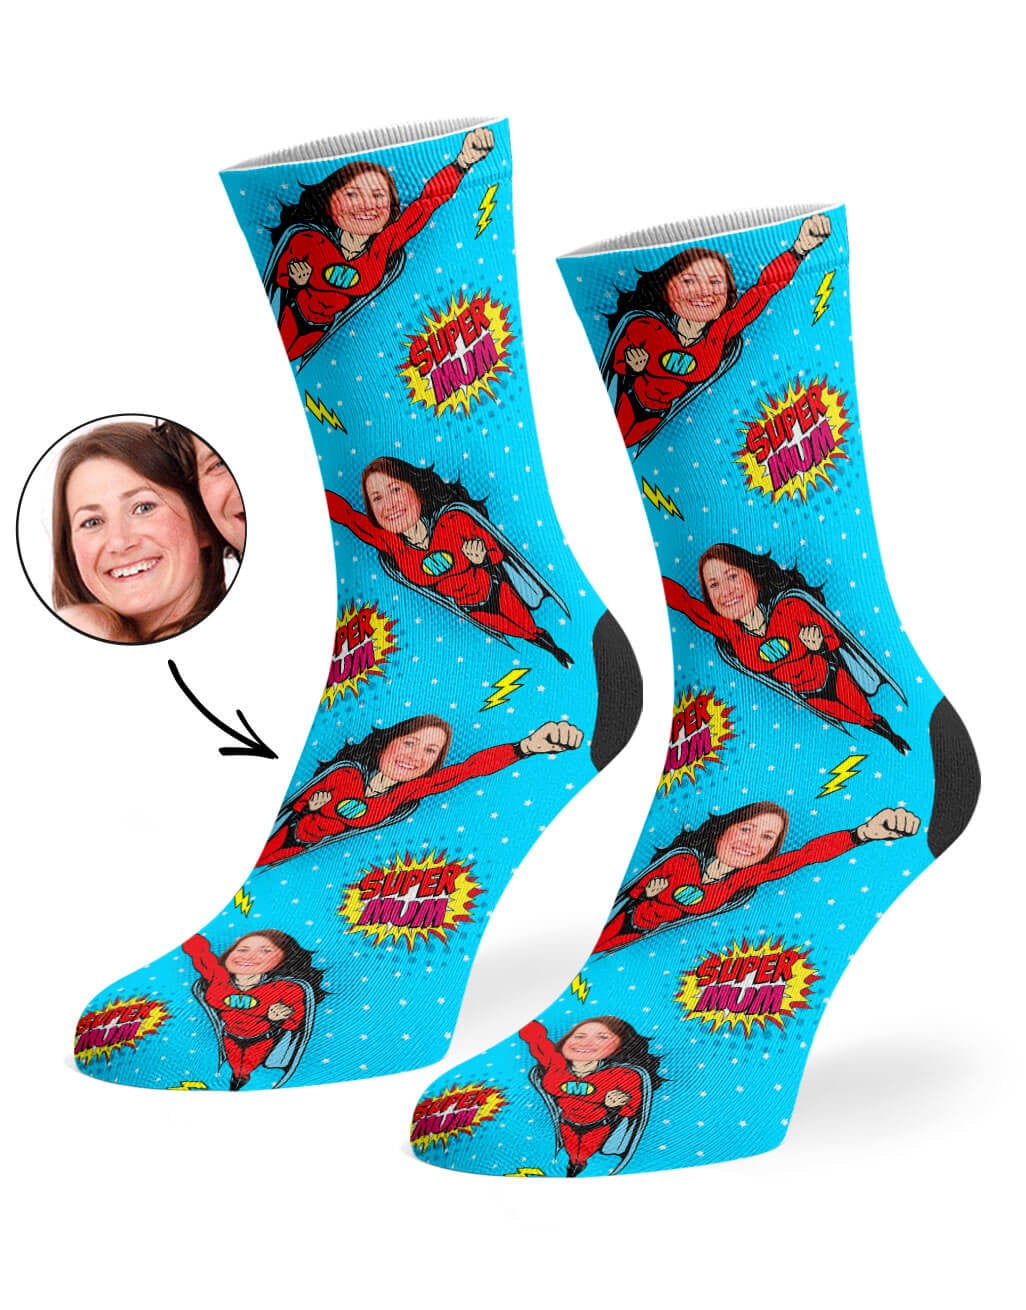 Super mam sokken - Sokken met gezicht